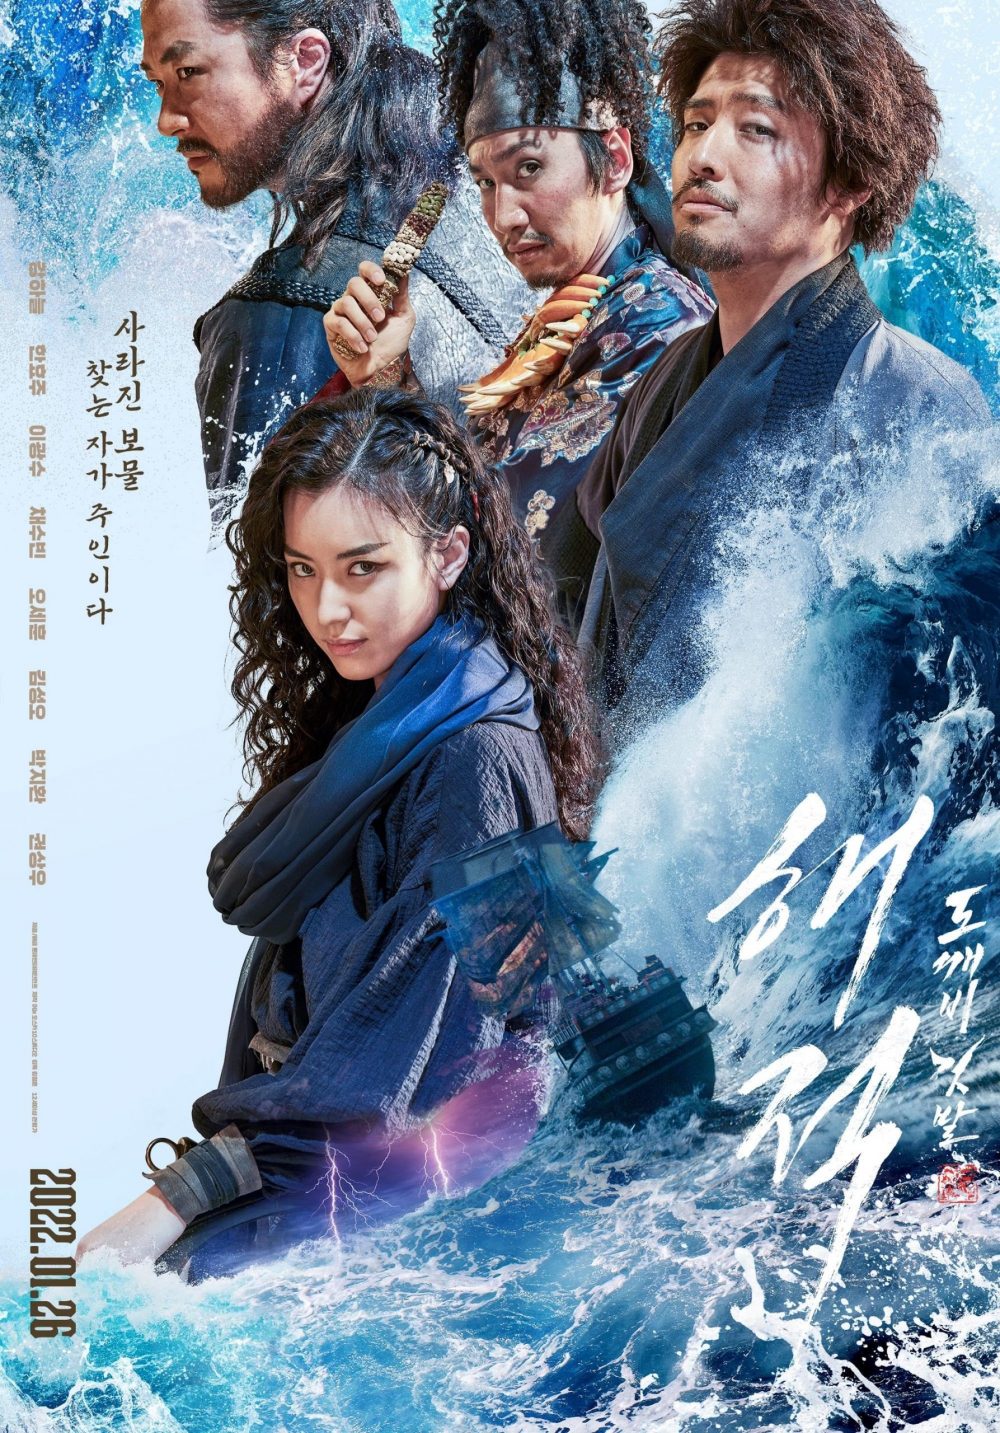 Phim mới nhất của Han Hyo Joo: Hải tặc 2 - The Pirates: Goblin Flag (2022)